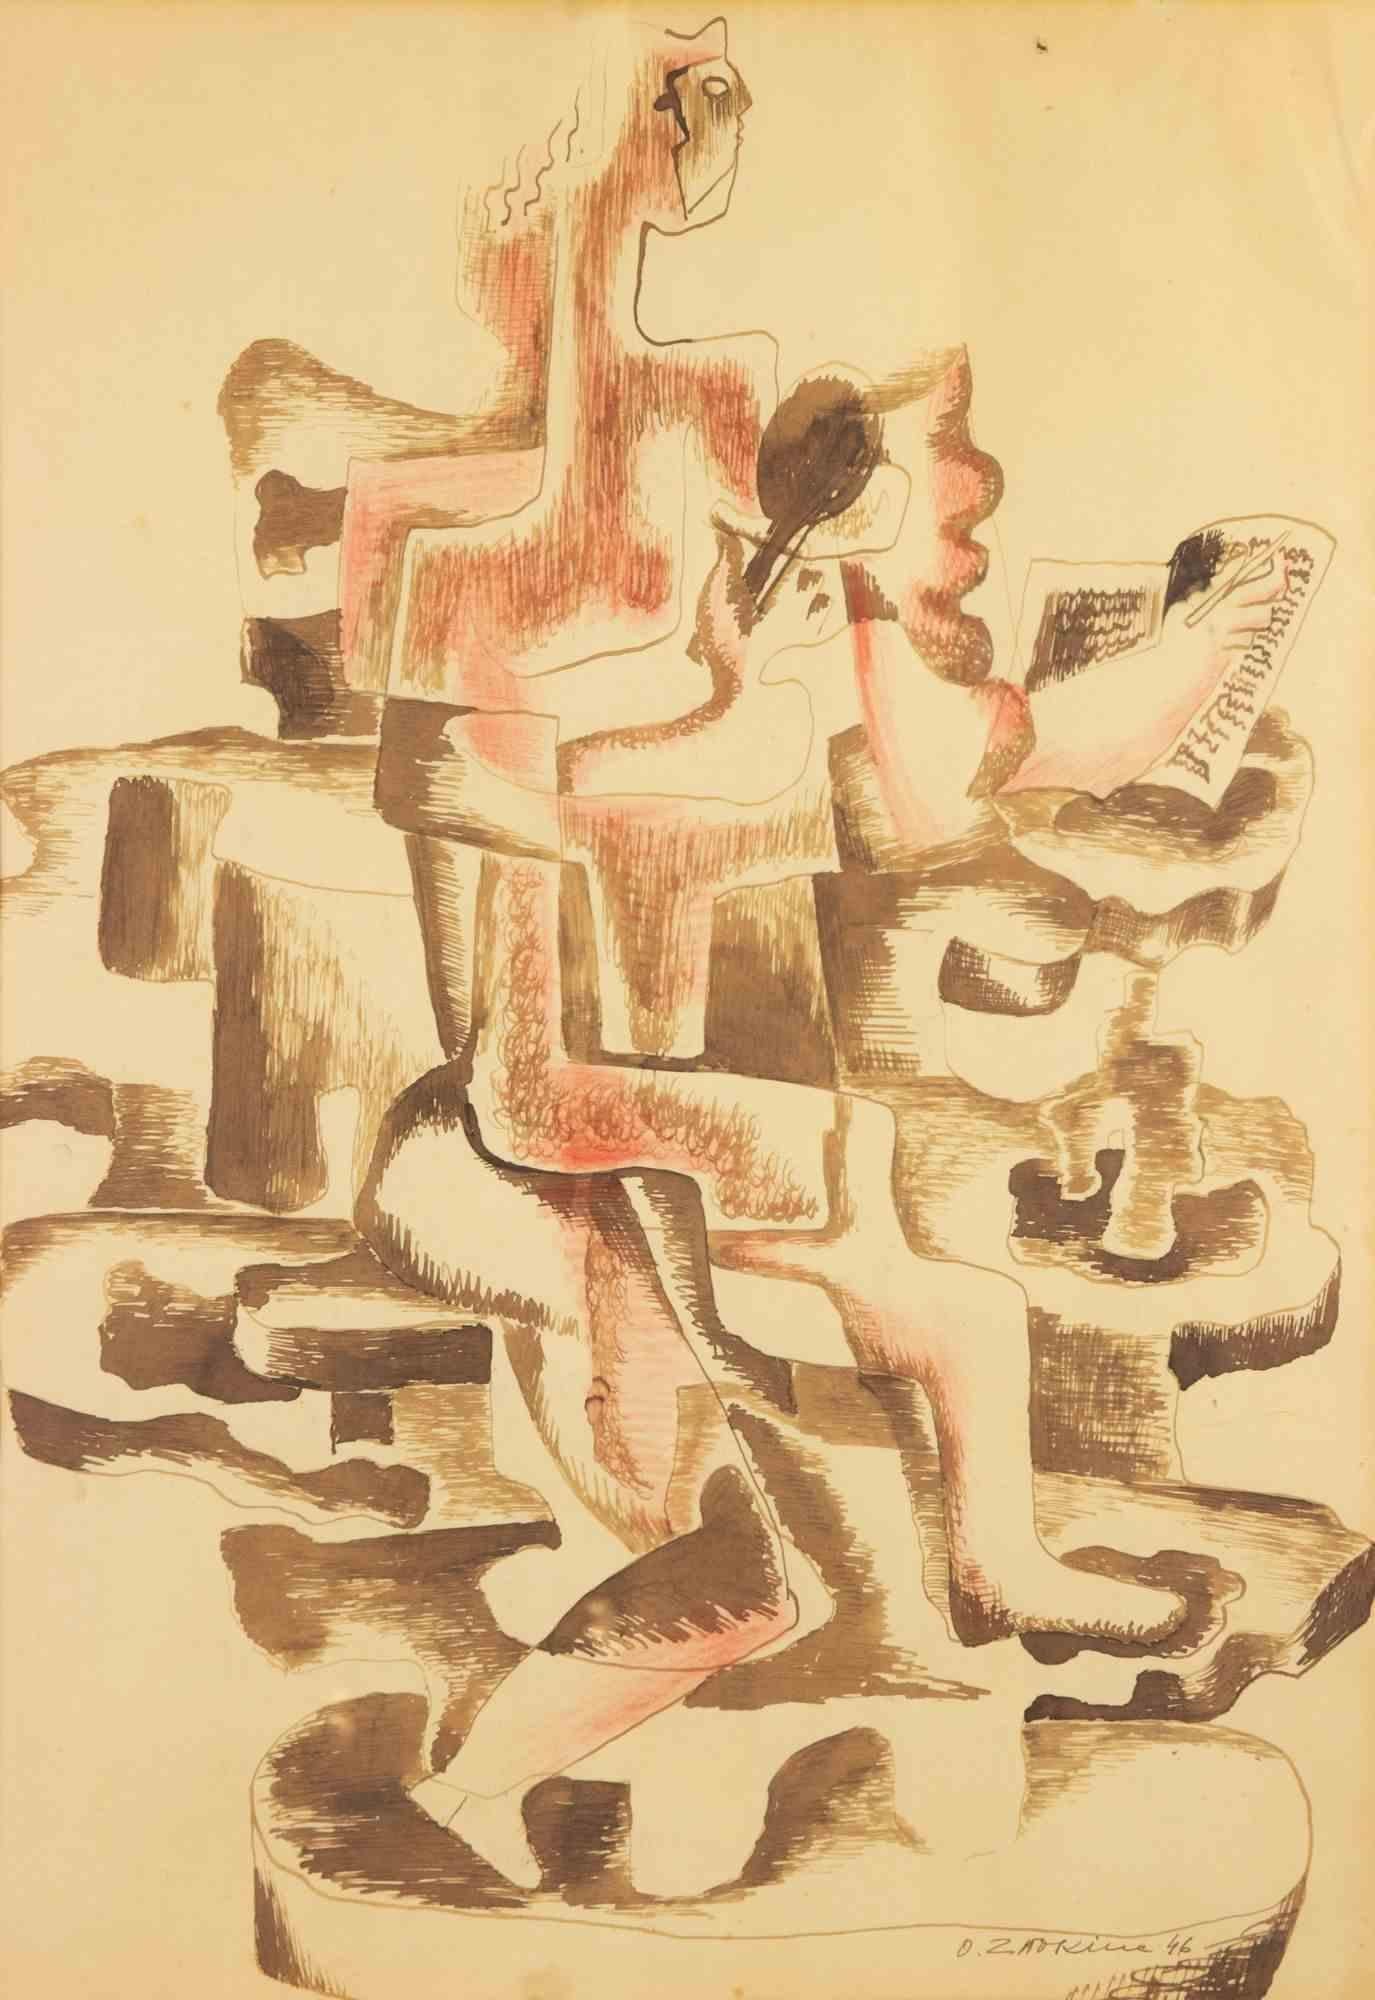 Untitled ist eine Zeichnung von Ossip Zadkine (1890 - 1967) aus dem Jahr 1946.

Gemischte Medien auf Papier.

45.50 x 61.70 cm.

Signatur und Jahreszahl unten rechts.

Das Werk ist im Zadkine Research Center, Belgien, archiviert.   

Sehr guter